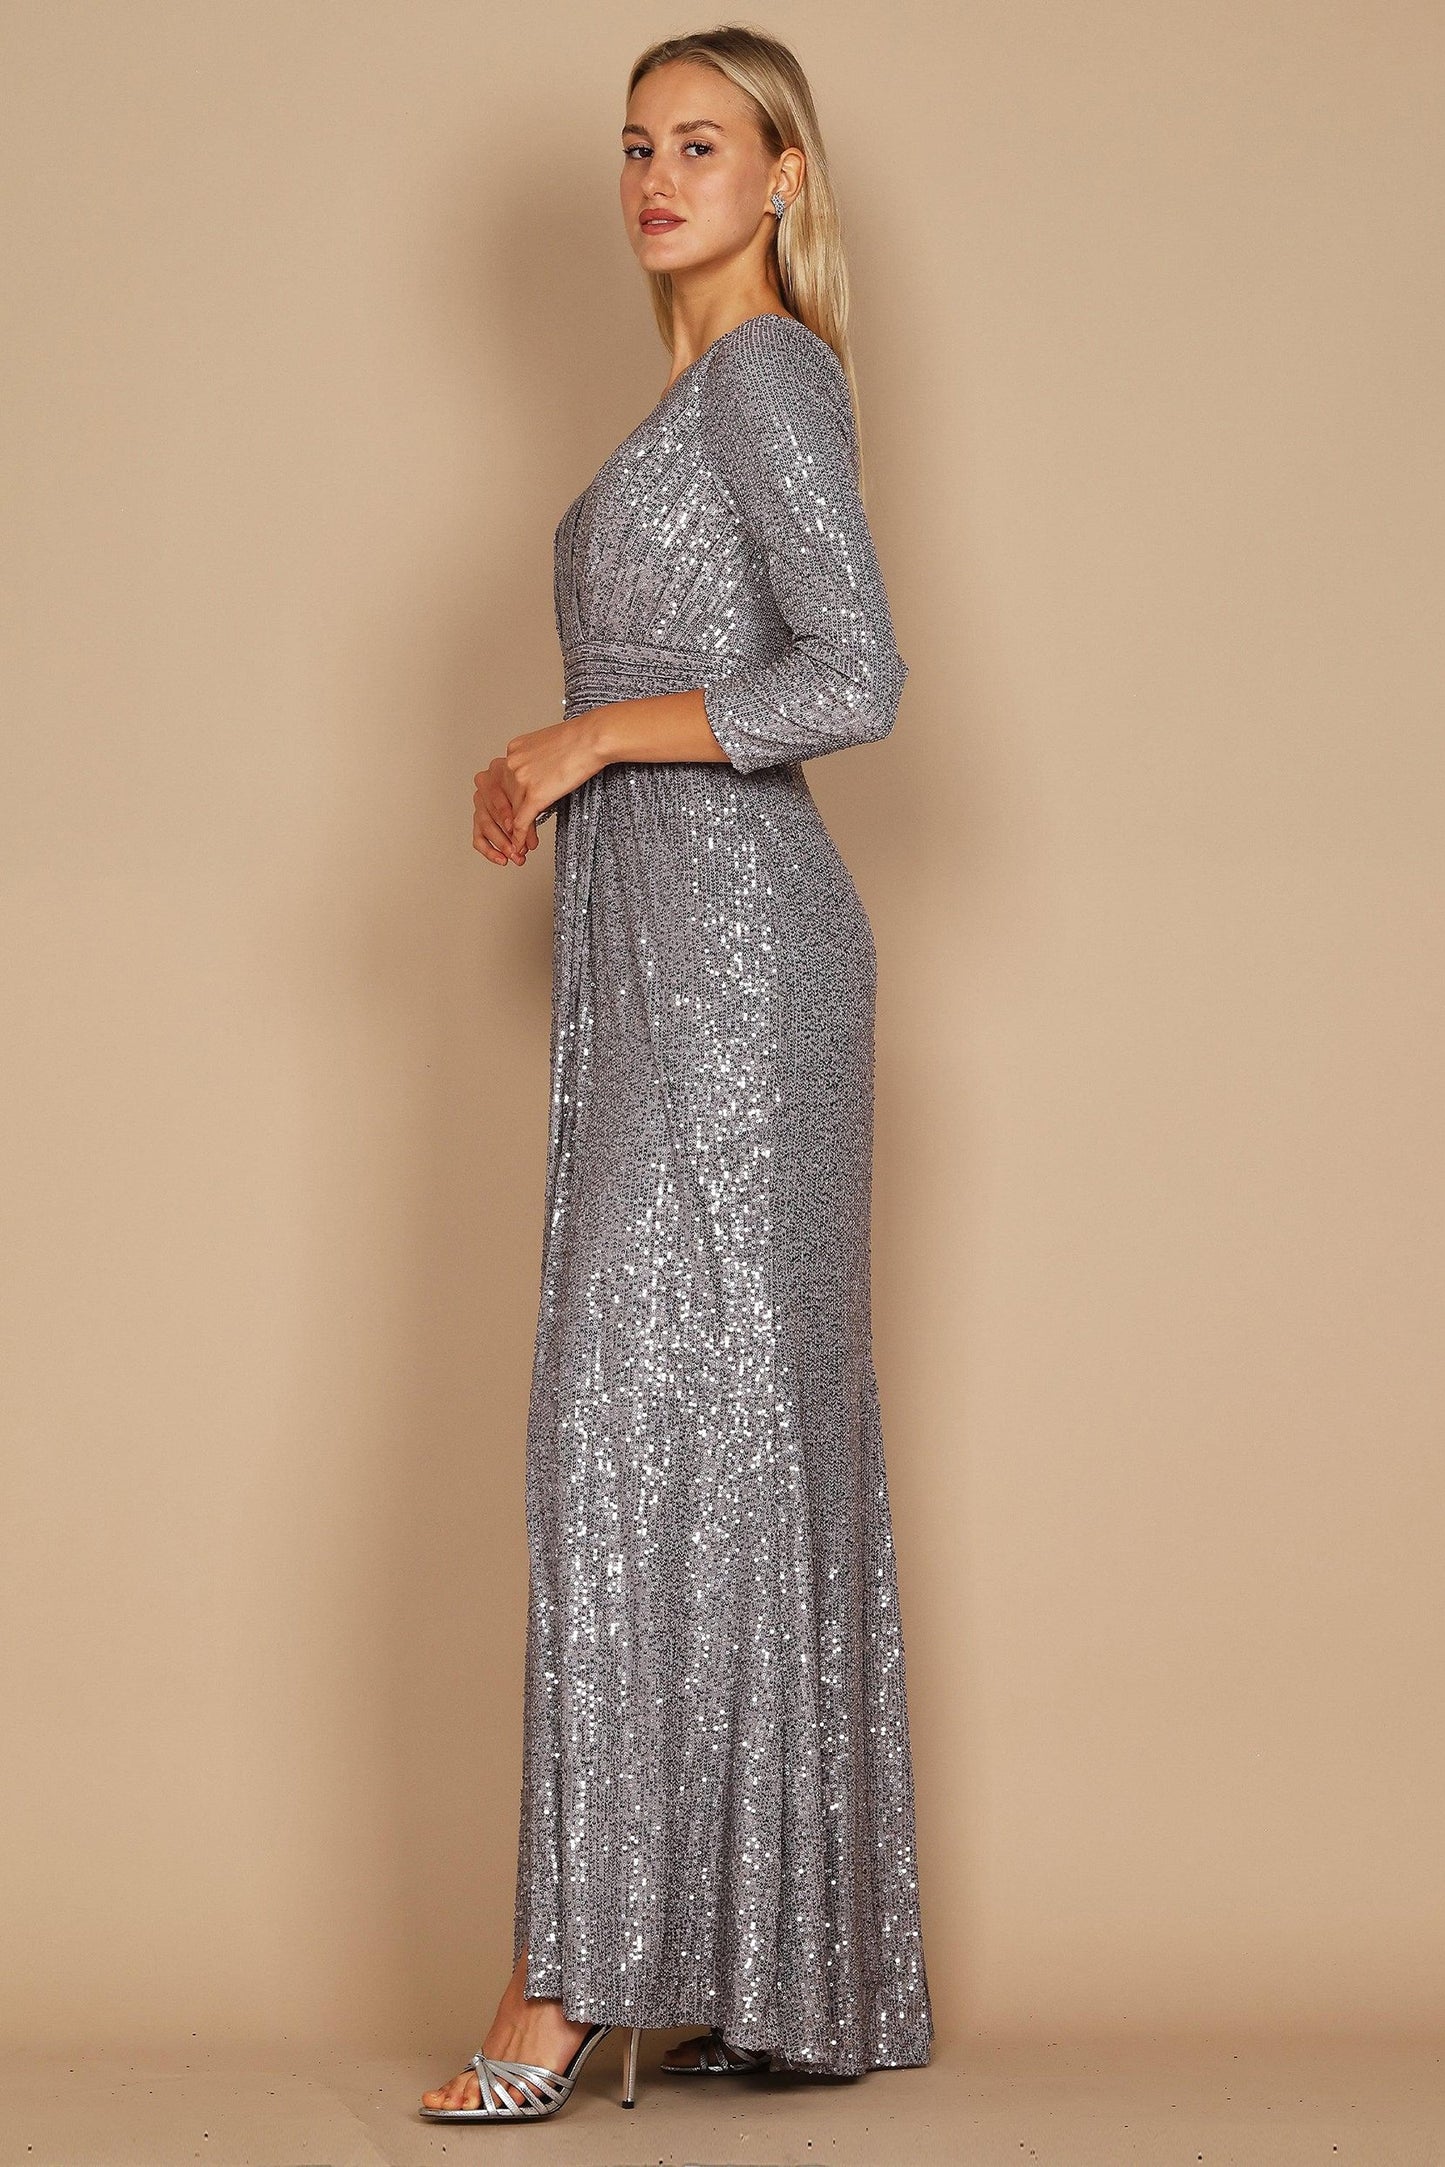 Sheath-Column Floor Length Sequined Dress CG0185